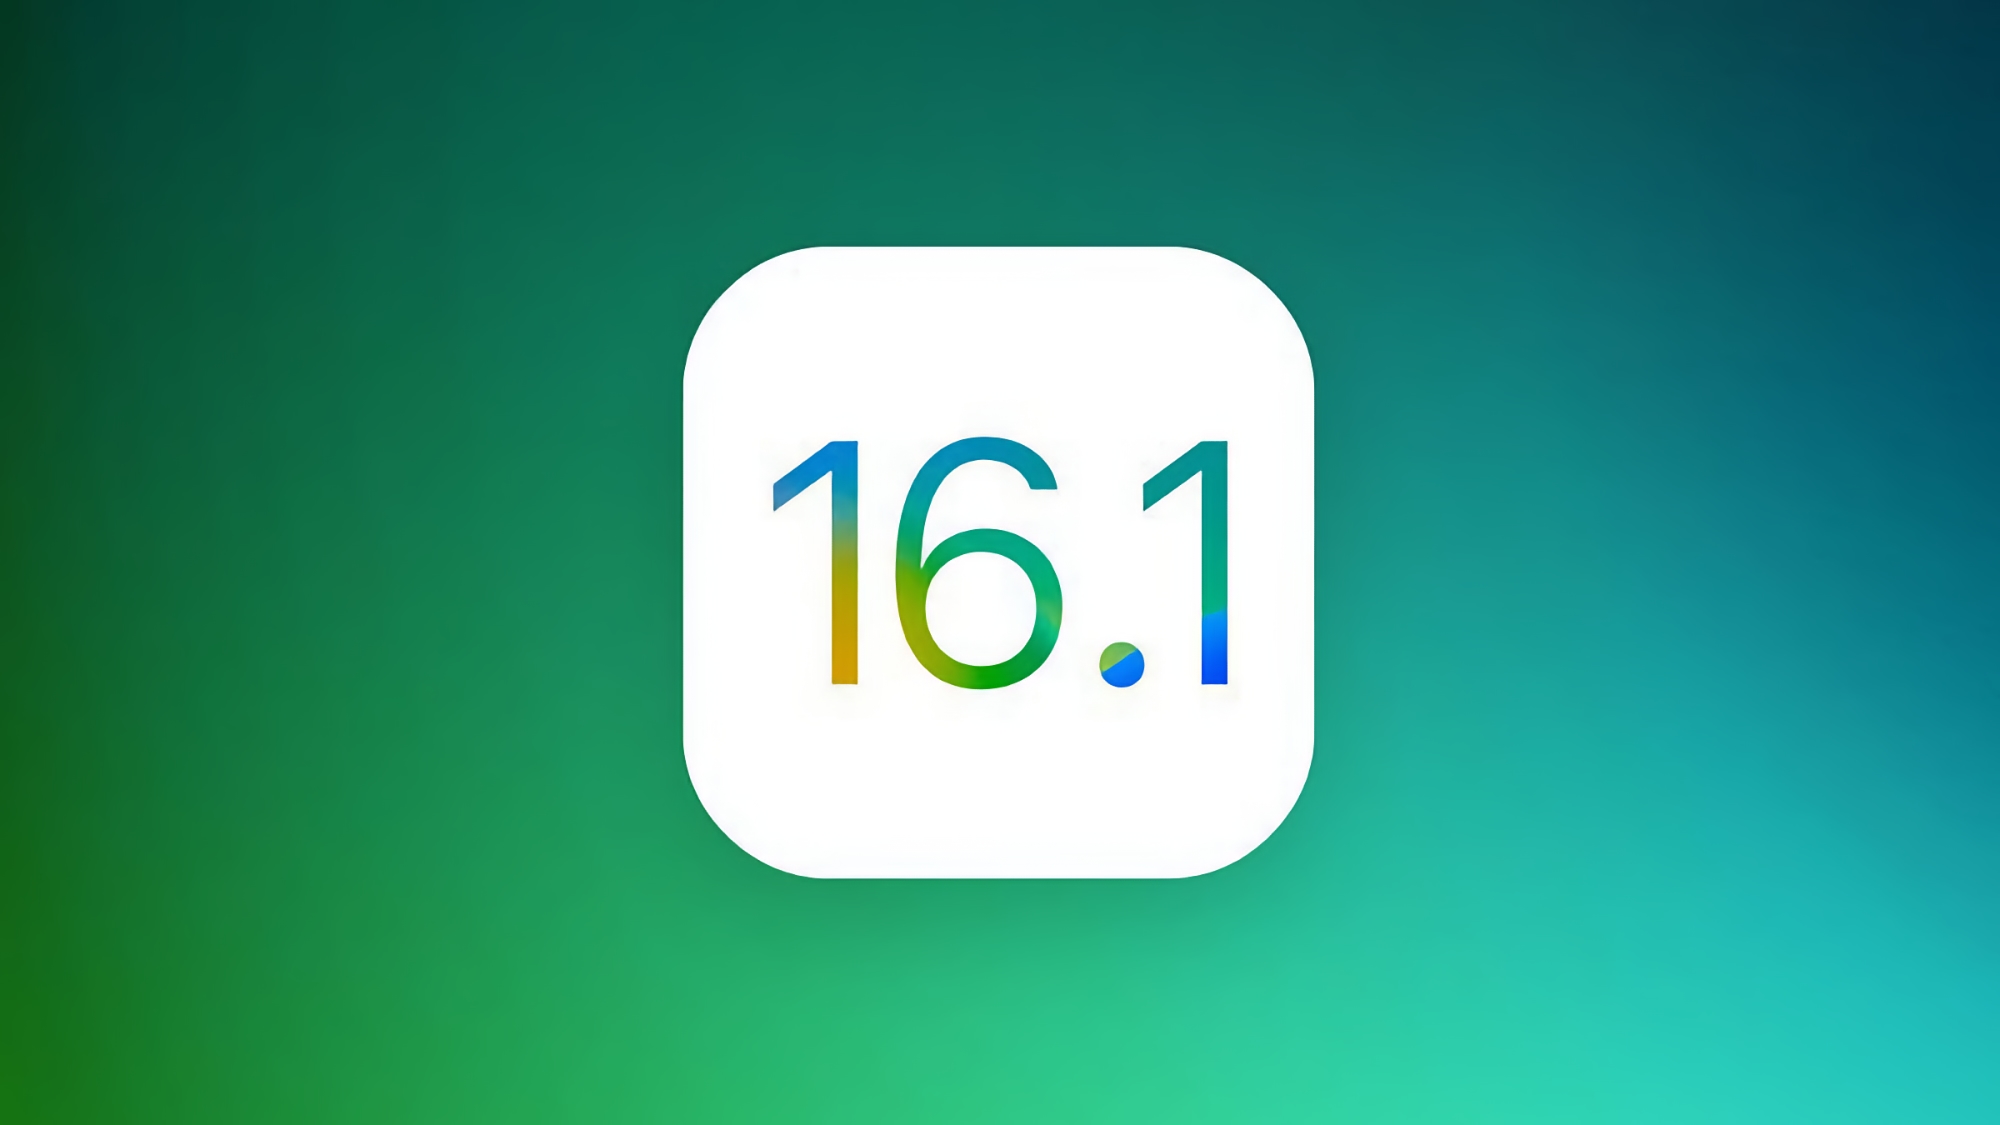 Non solo iPadOS 16.1 e macOS Ventura: Apple presenterà un'altra versione stabile di iOS 16.1 il 24 ottobre